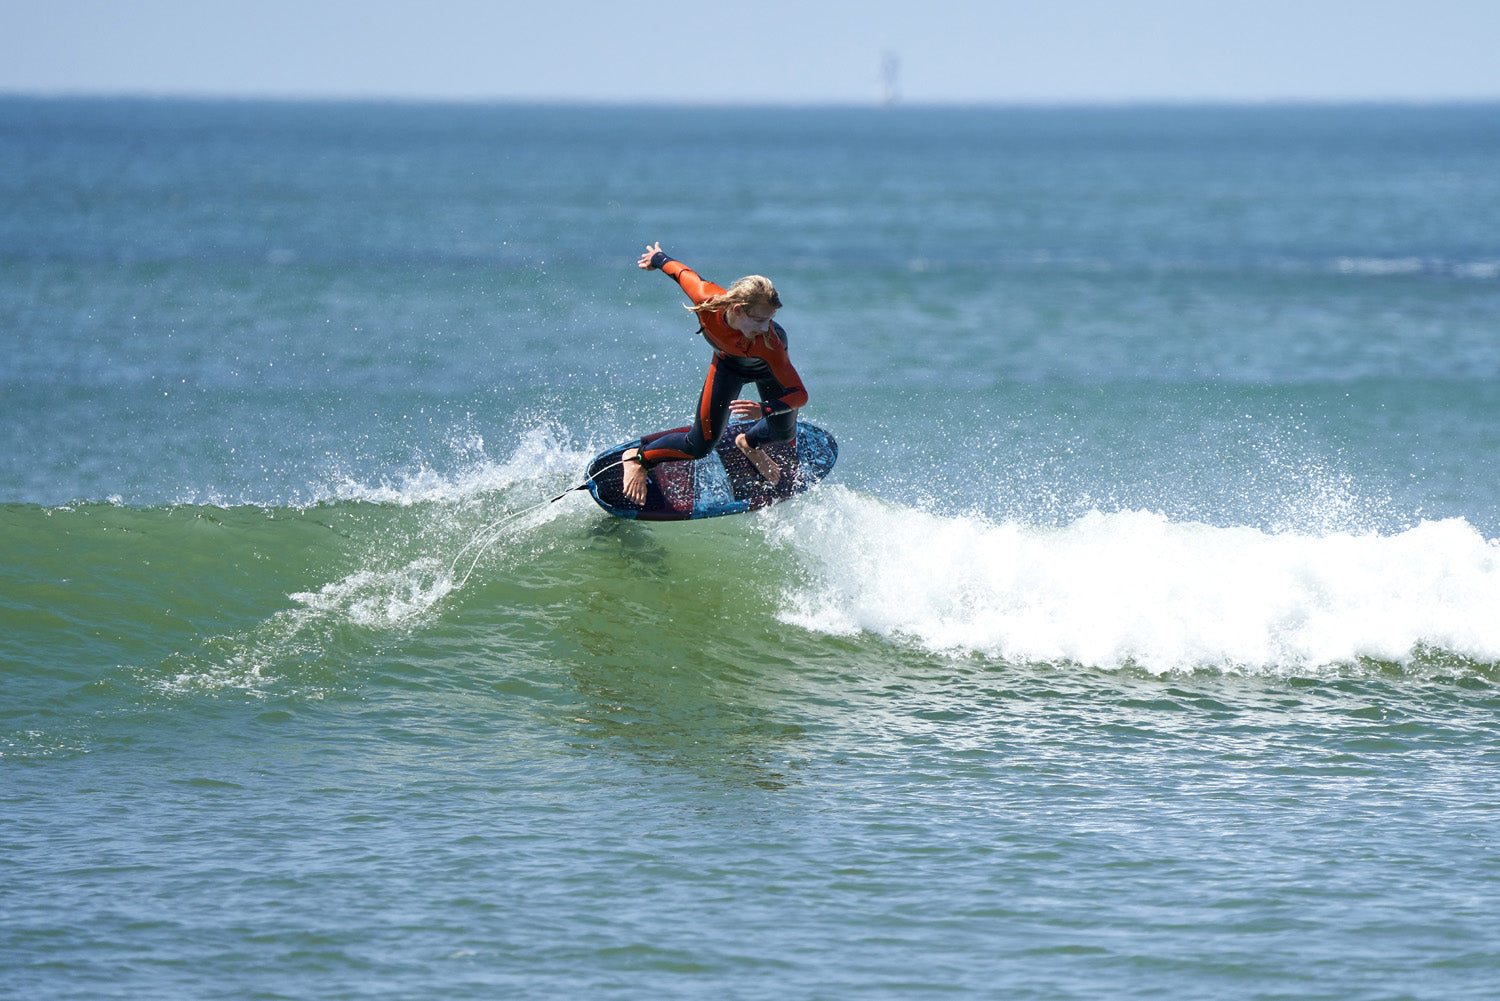 PHOTO: SURF FOILING !!!